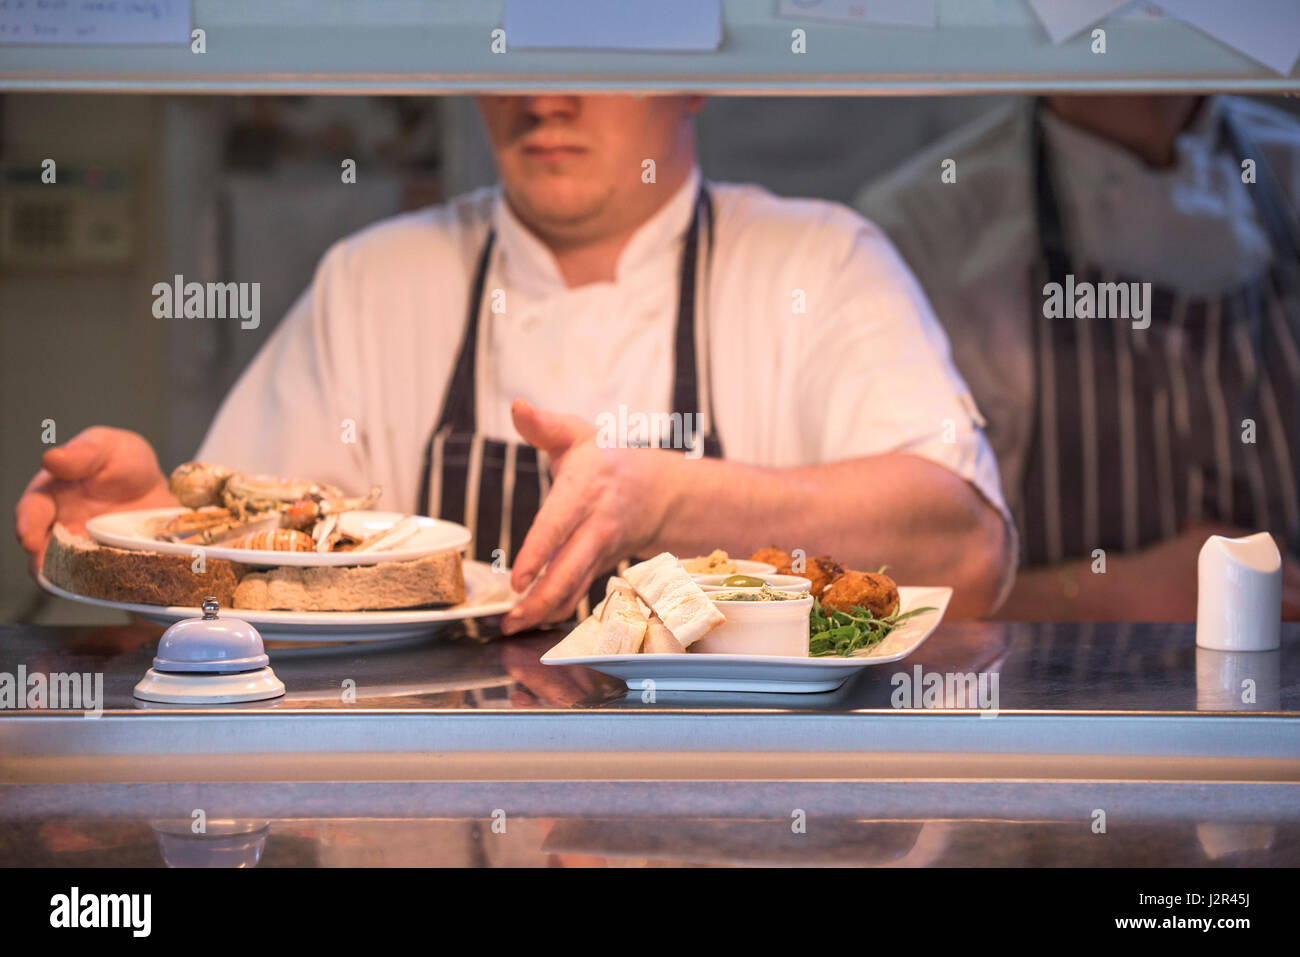 Restaurant-Teller mit Essen Durchreiche Lebensmittelzubereitung Chef Mahlzeiten essen Essen service Industrie Gerichte Stockfoto